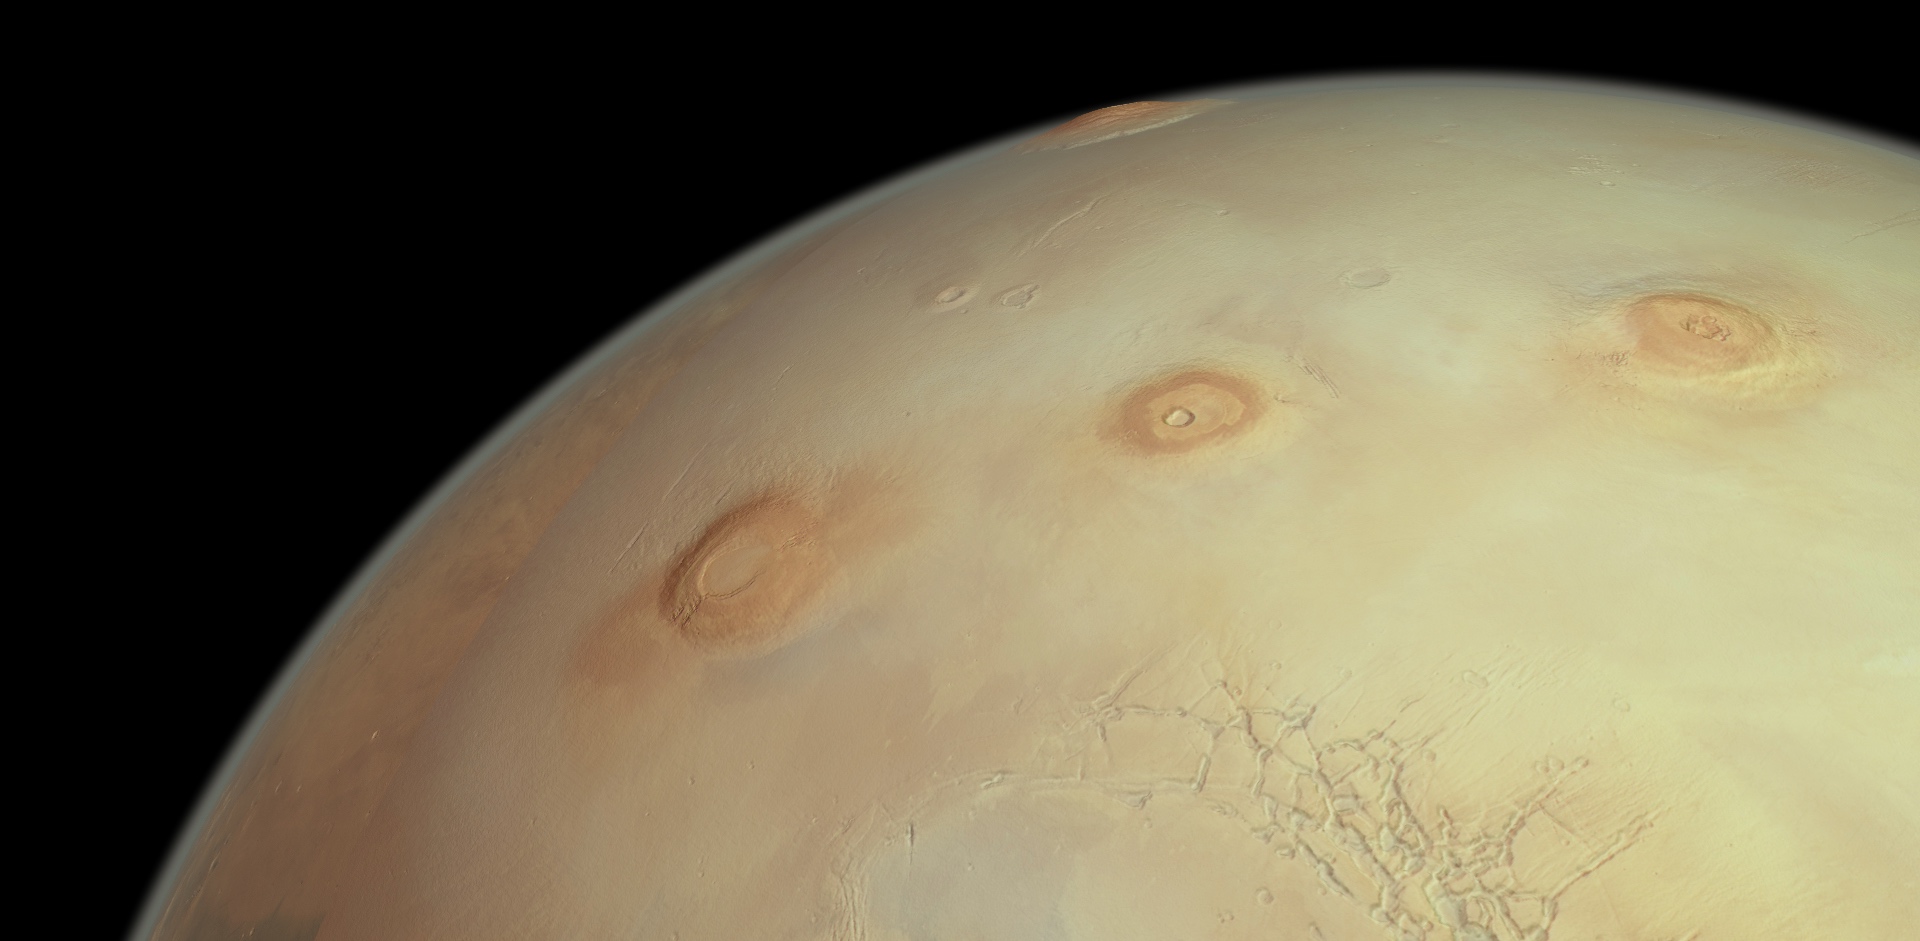 Mars Express a désormais accompli plus de 25 000 orbites autour de la planète rouge © ESA, DLR, FU Berlin, CC BY-SA 3.0 IGO or ESA Standard Licence